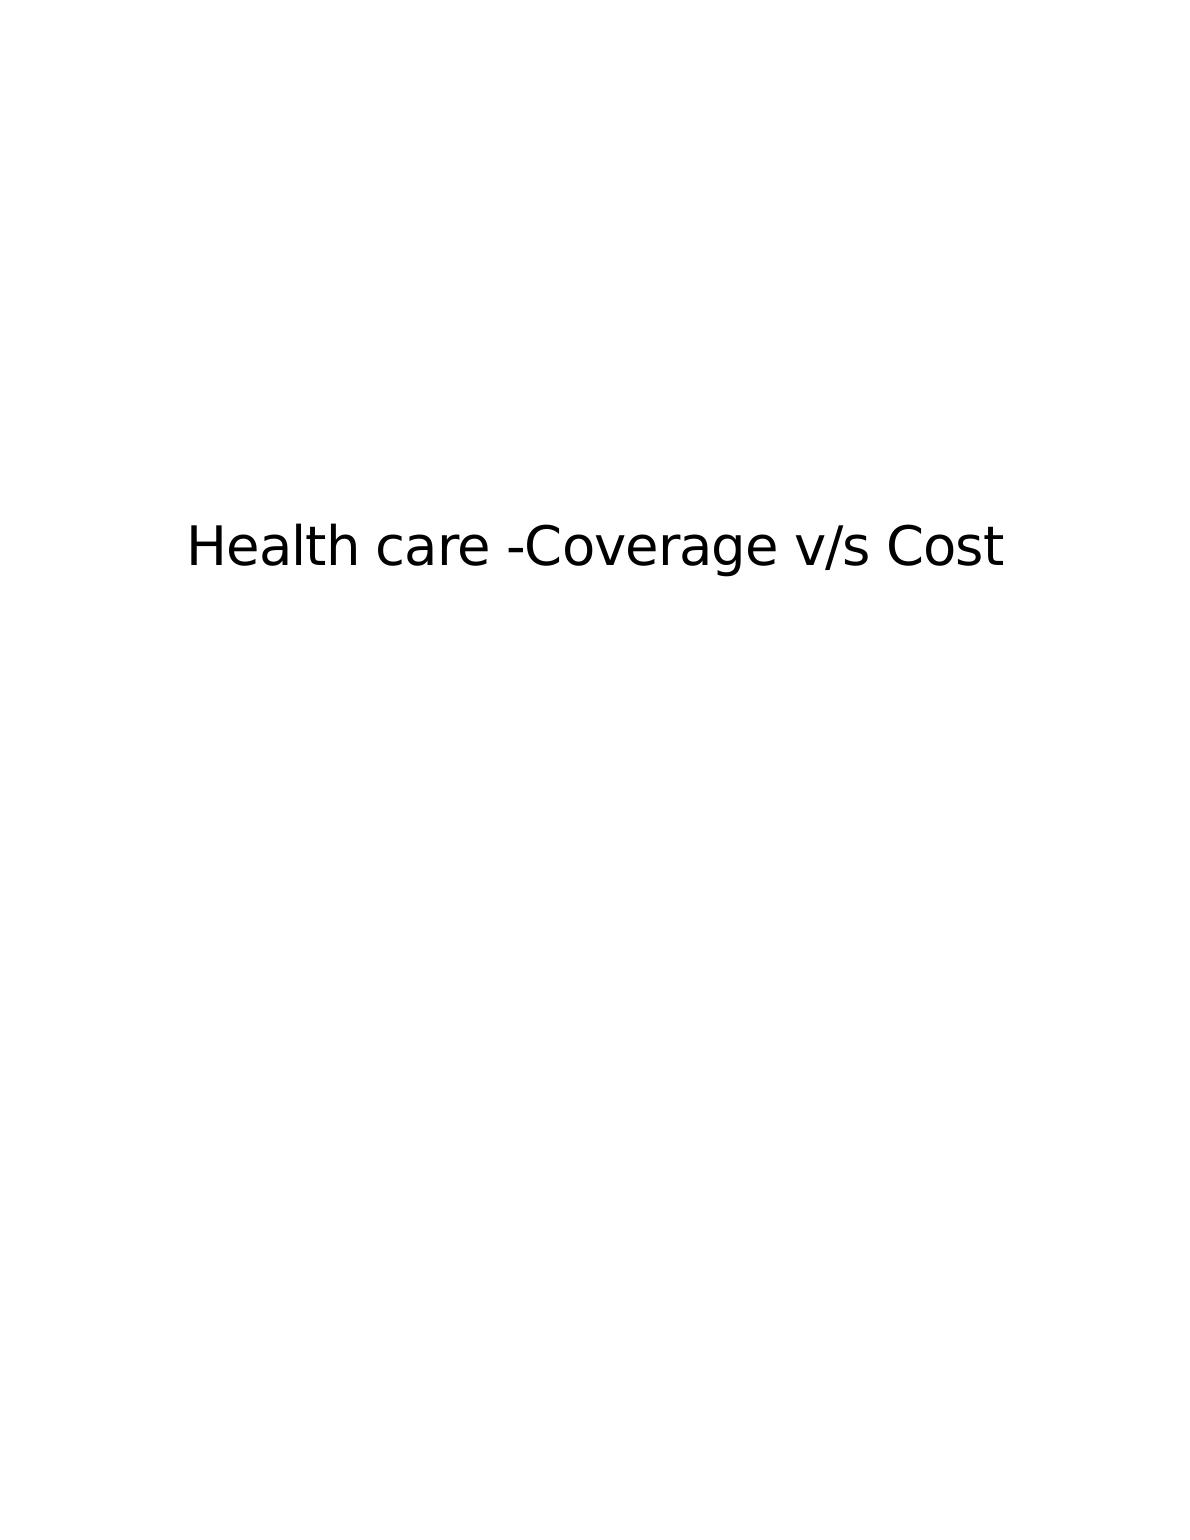 Health care -Coverage v/s Cost._1